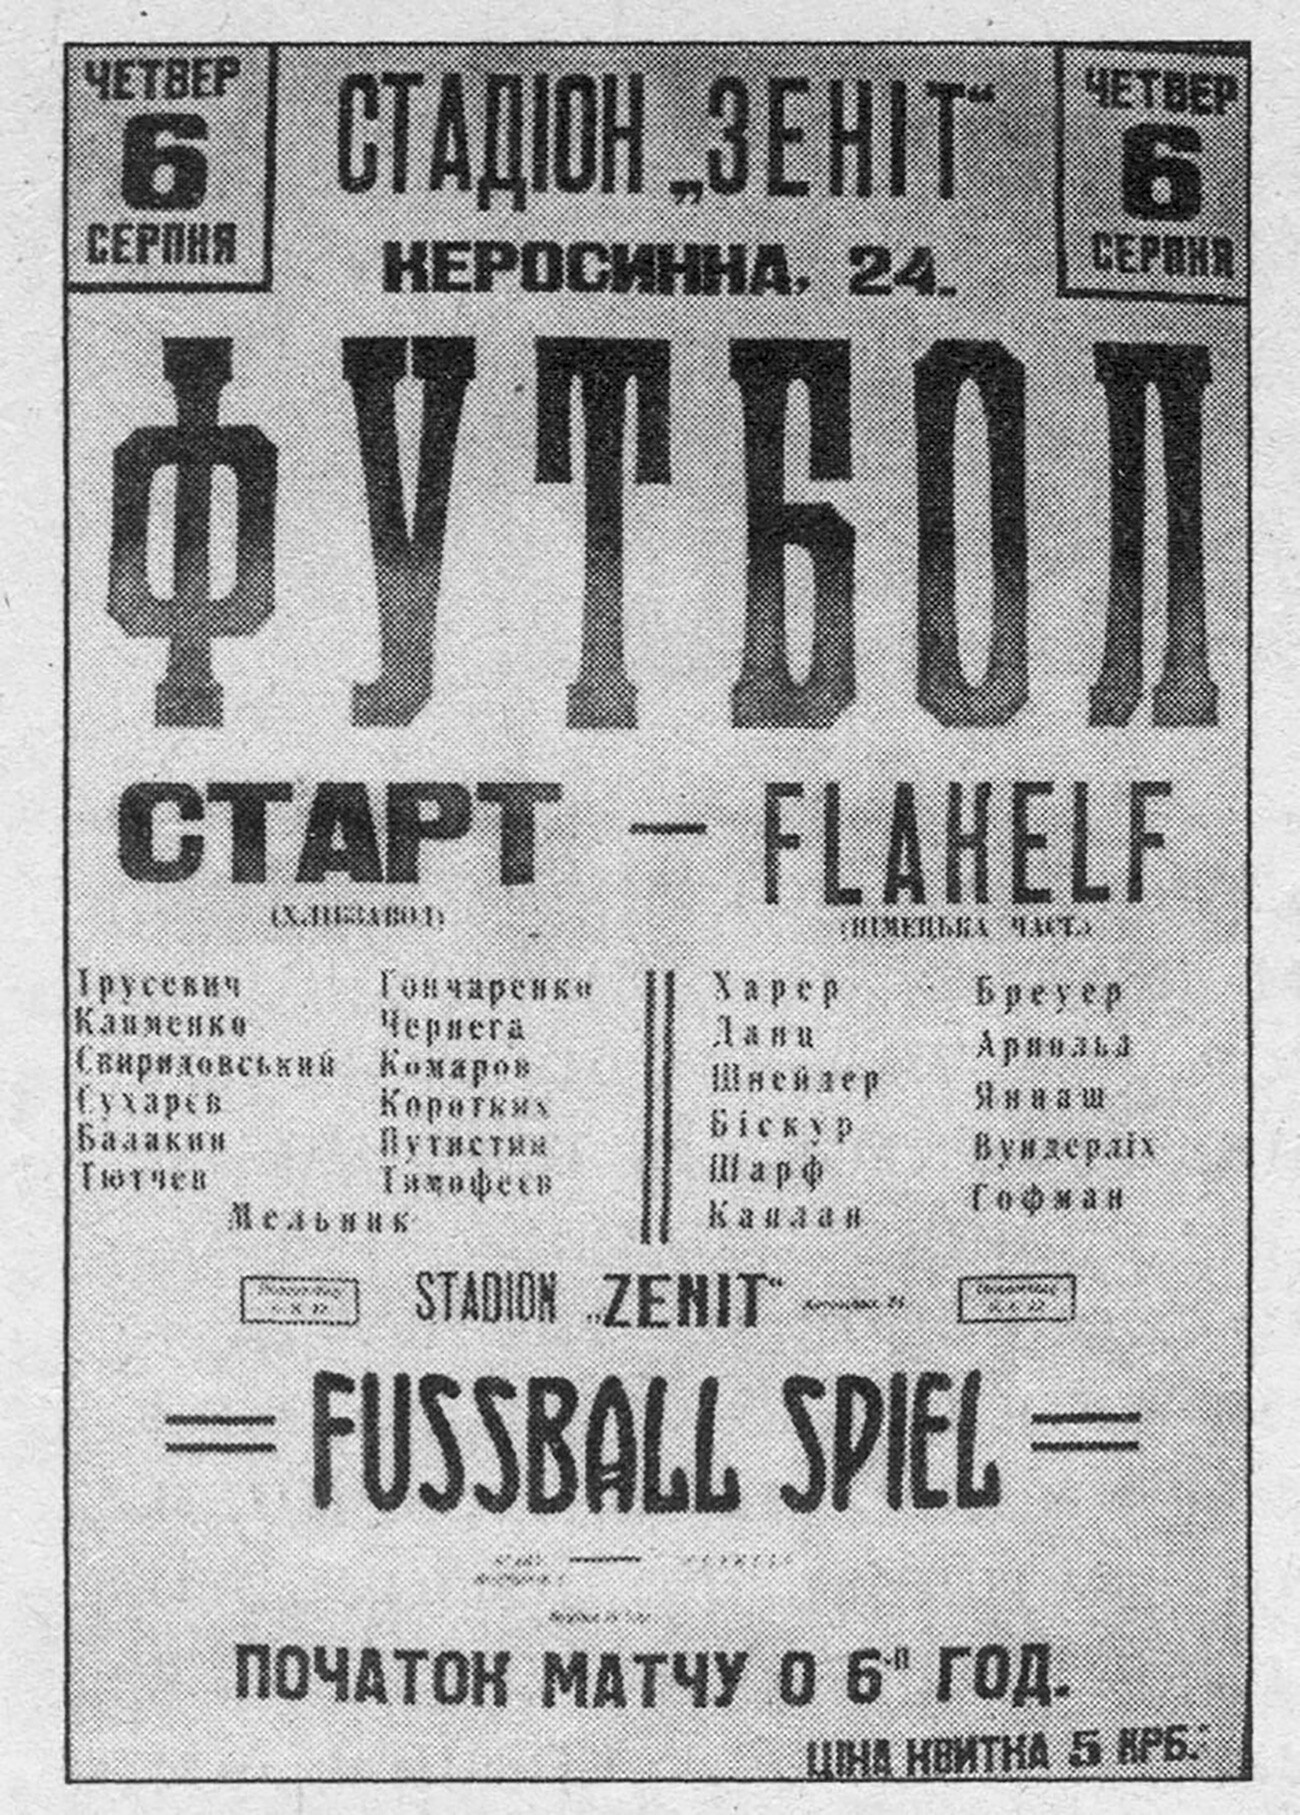 Постер фудбалске утакмице између „Старта” и „Флакелфа” на стадиону Зенит у Кијеву 9. августа 1942.